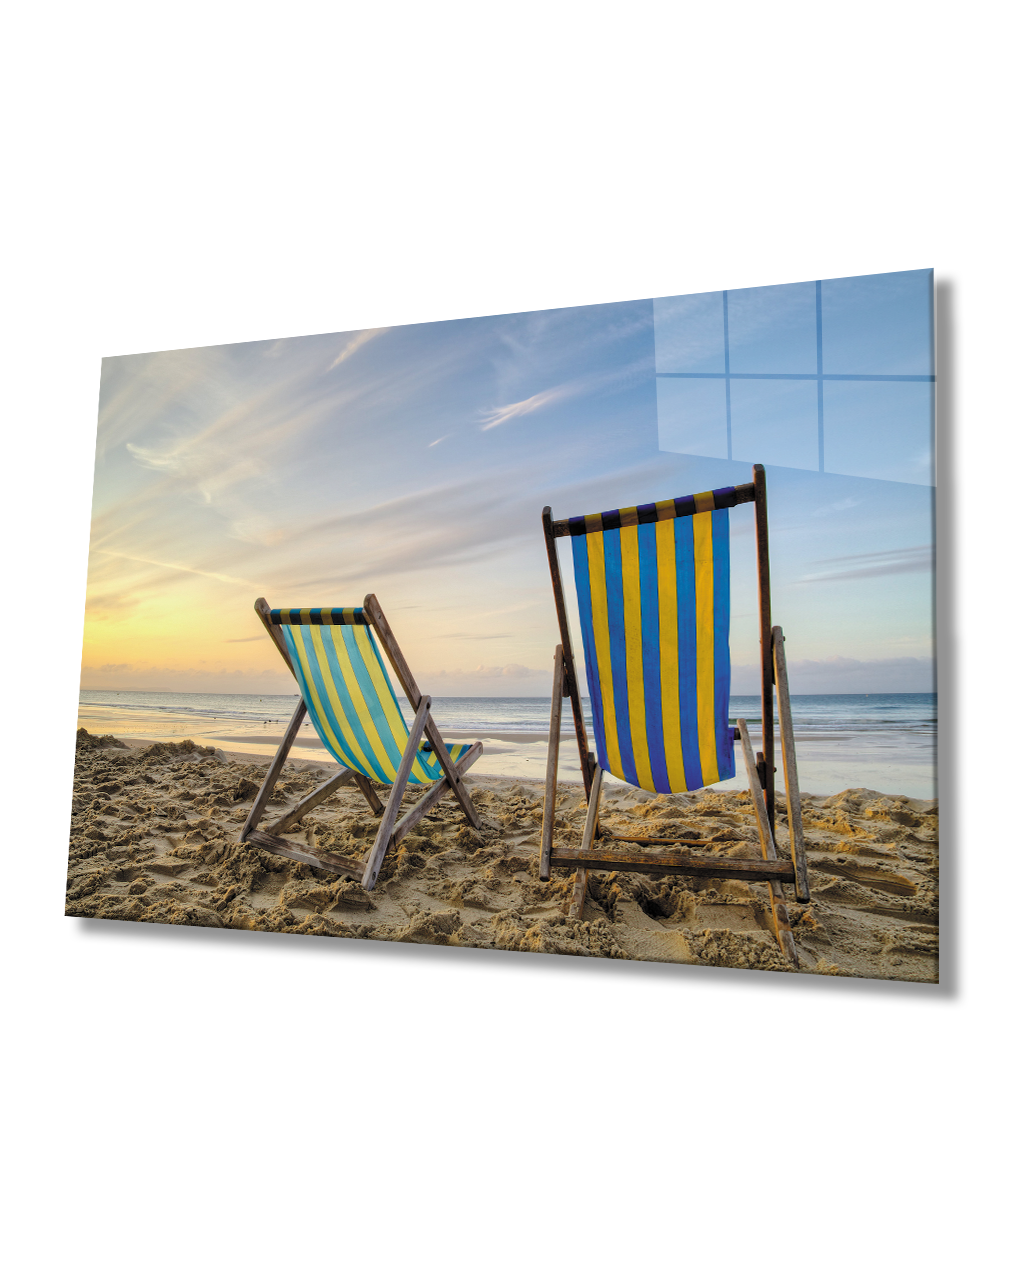 Gün Batımı Sahil Manzaralı Cam Tablo  4mm Dayanıklı Temperli Cam Sunset Beach View Glass Table 4mm Durable Tempered Glass